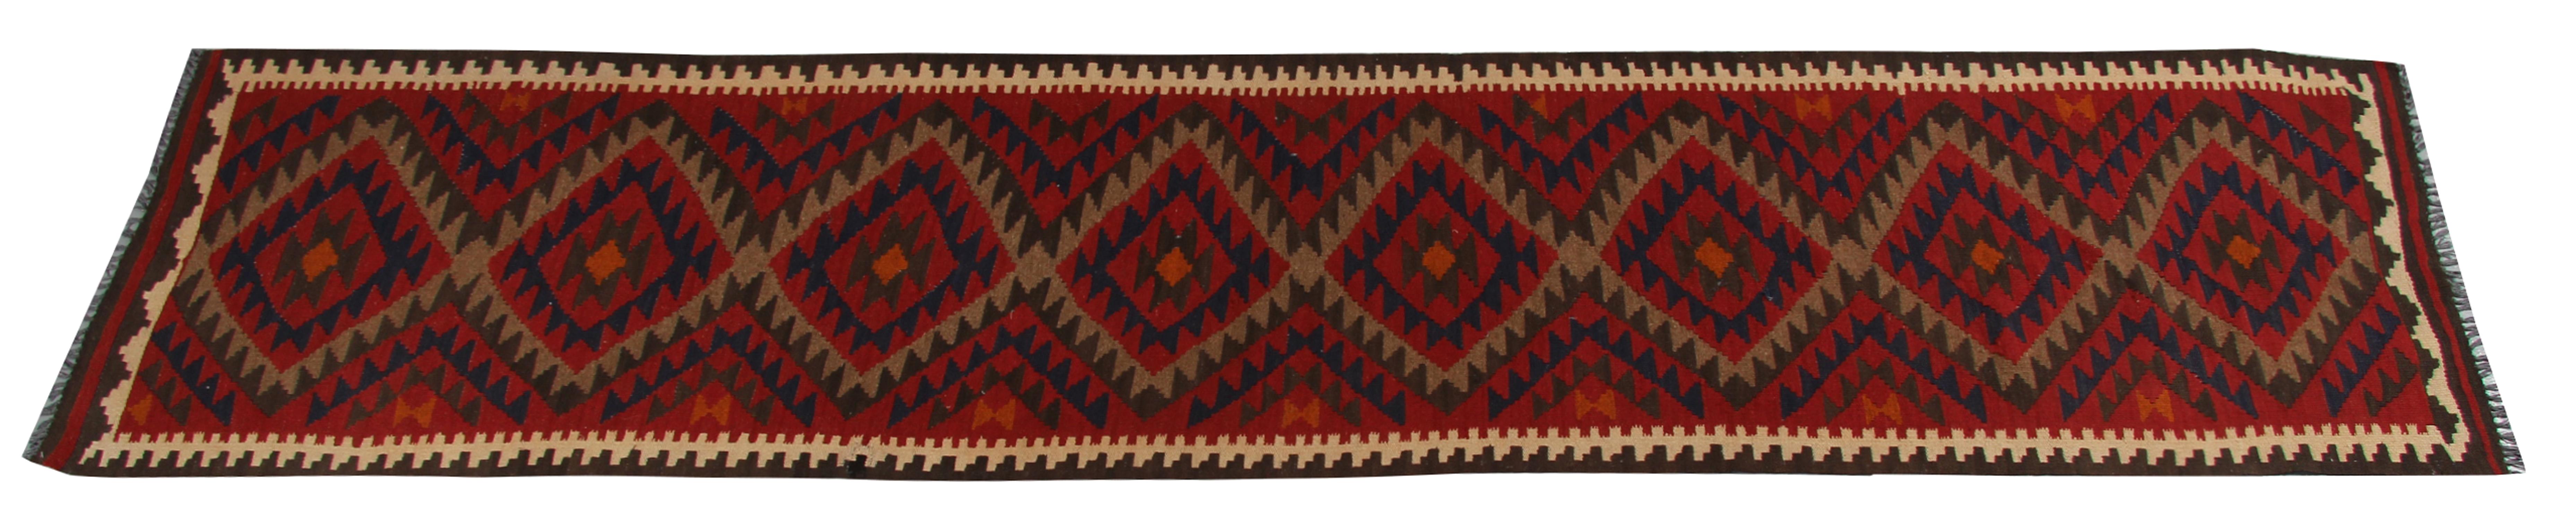 Afghan Vintage Kilim Runner Rug Geometric Handwoven Carpet Traditional Wool Rug